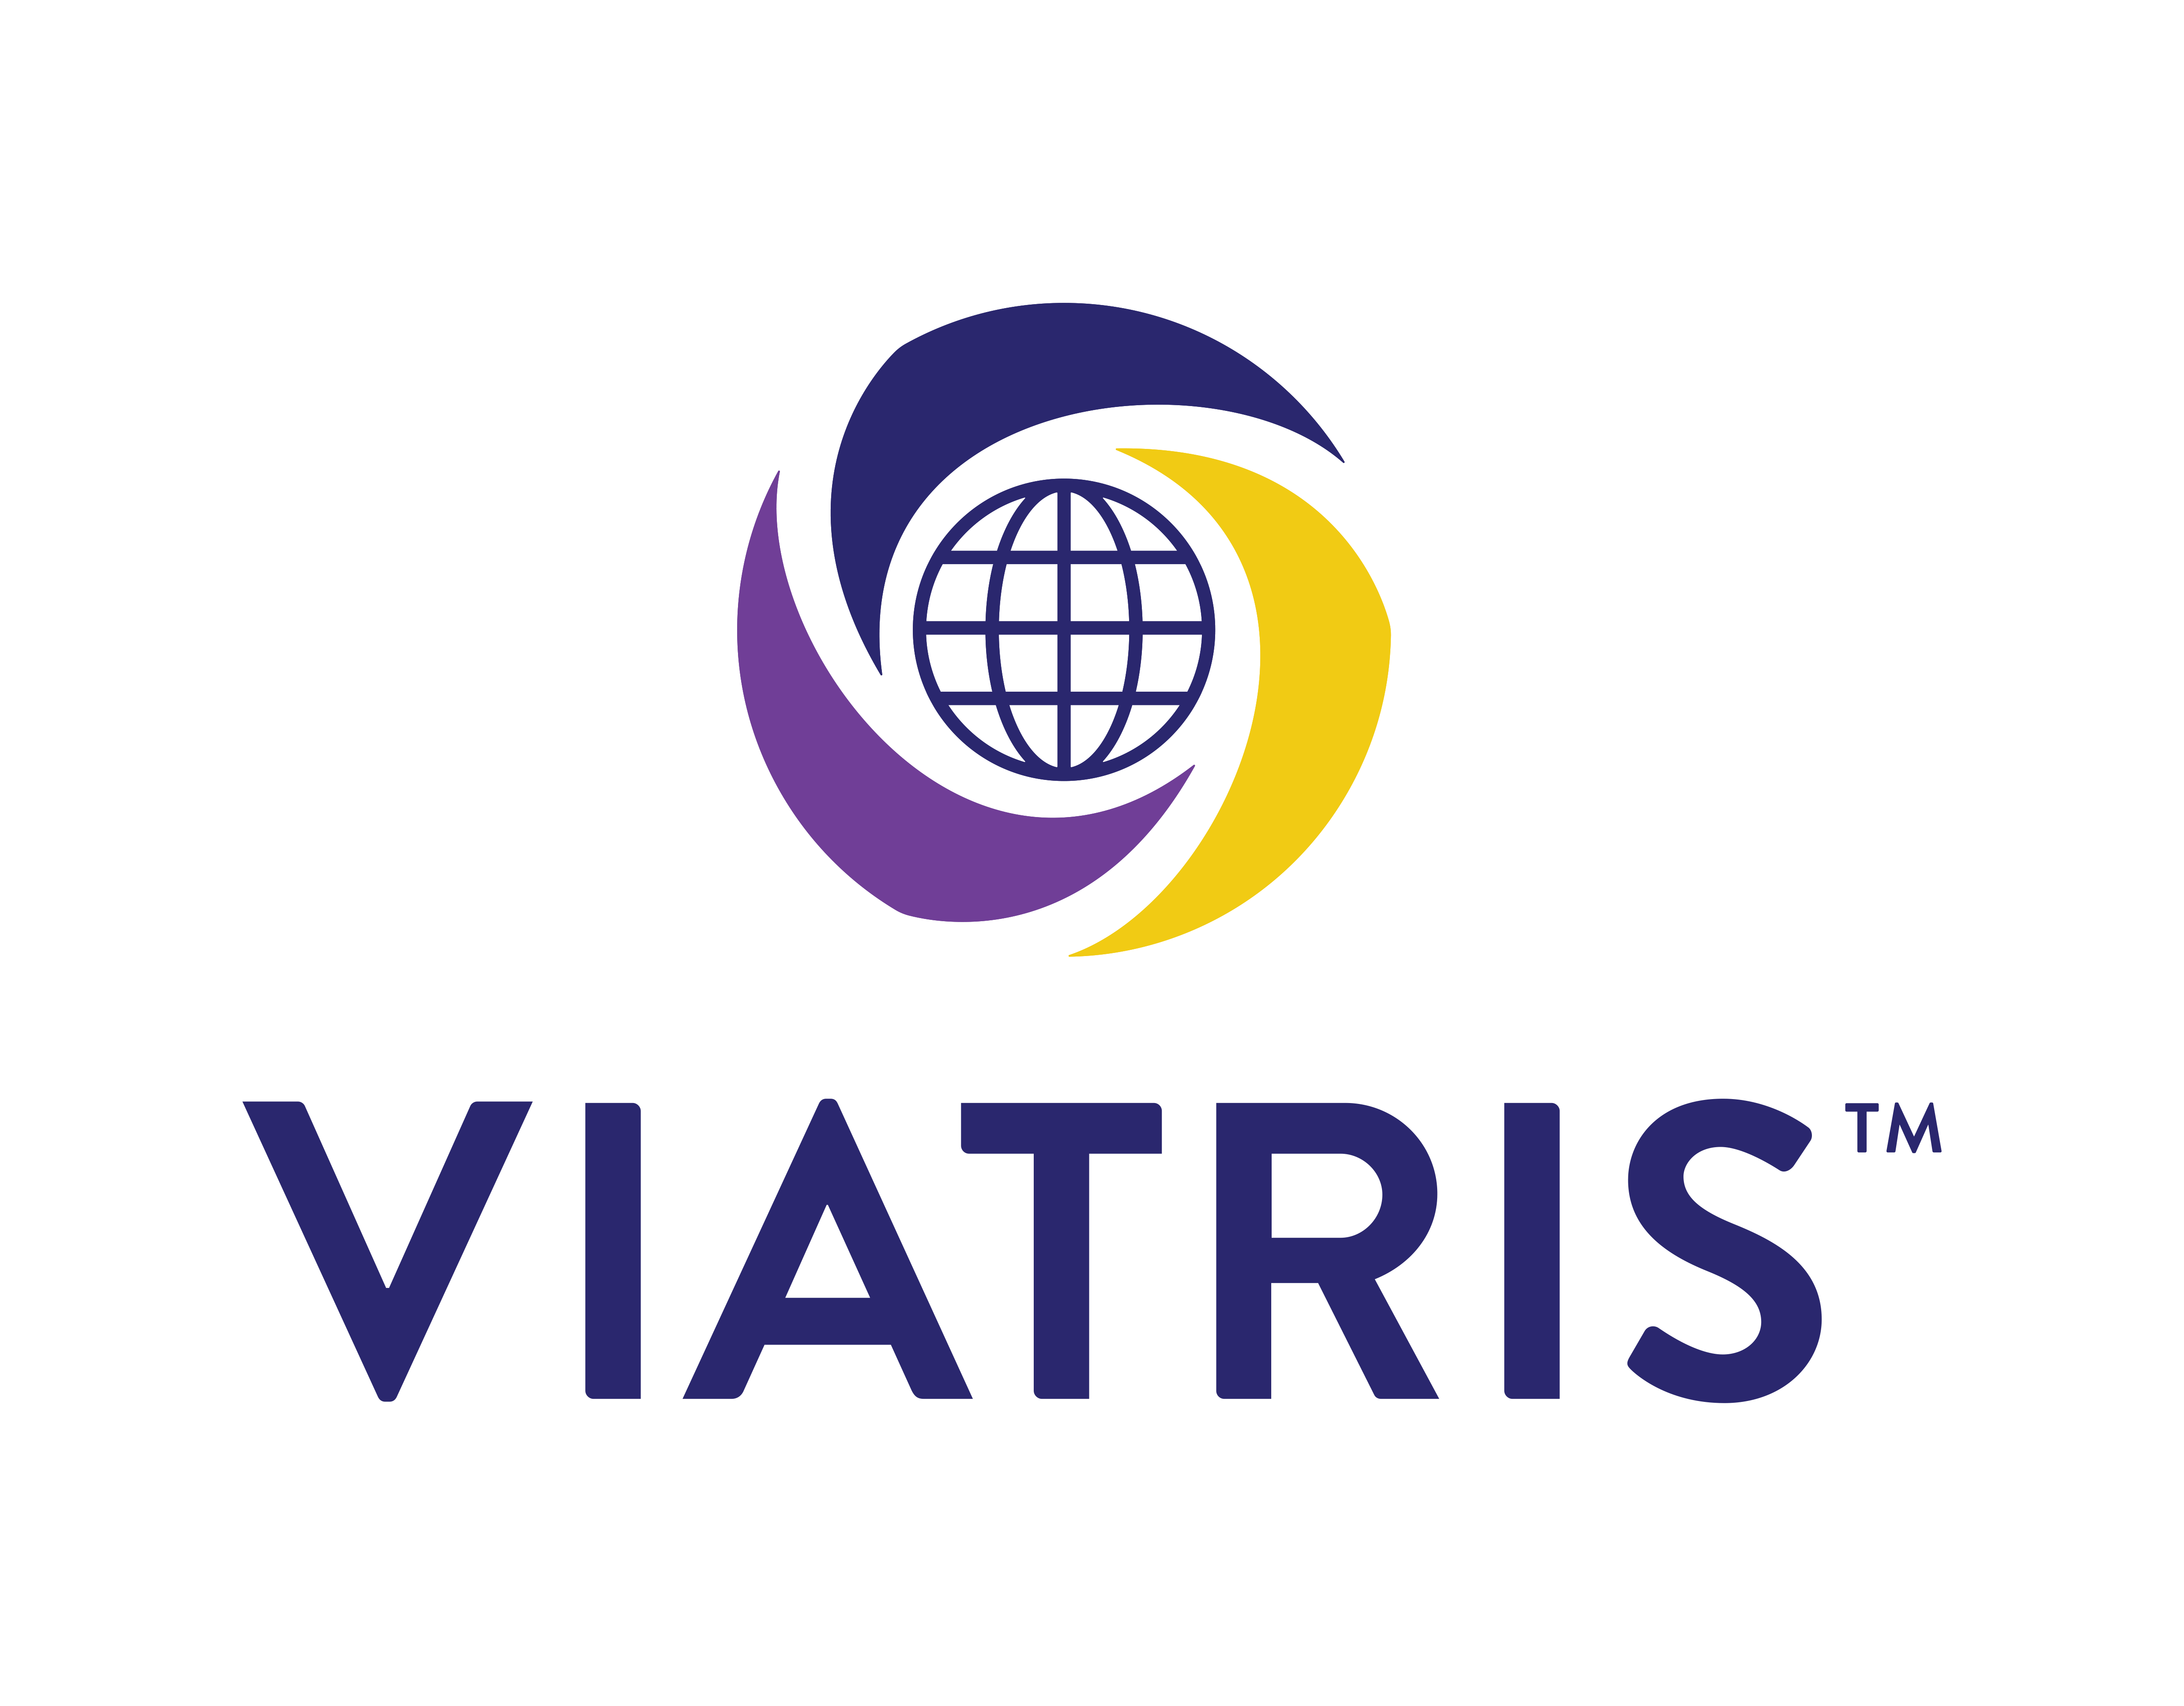 (c) Viatris.no